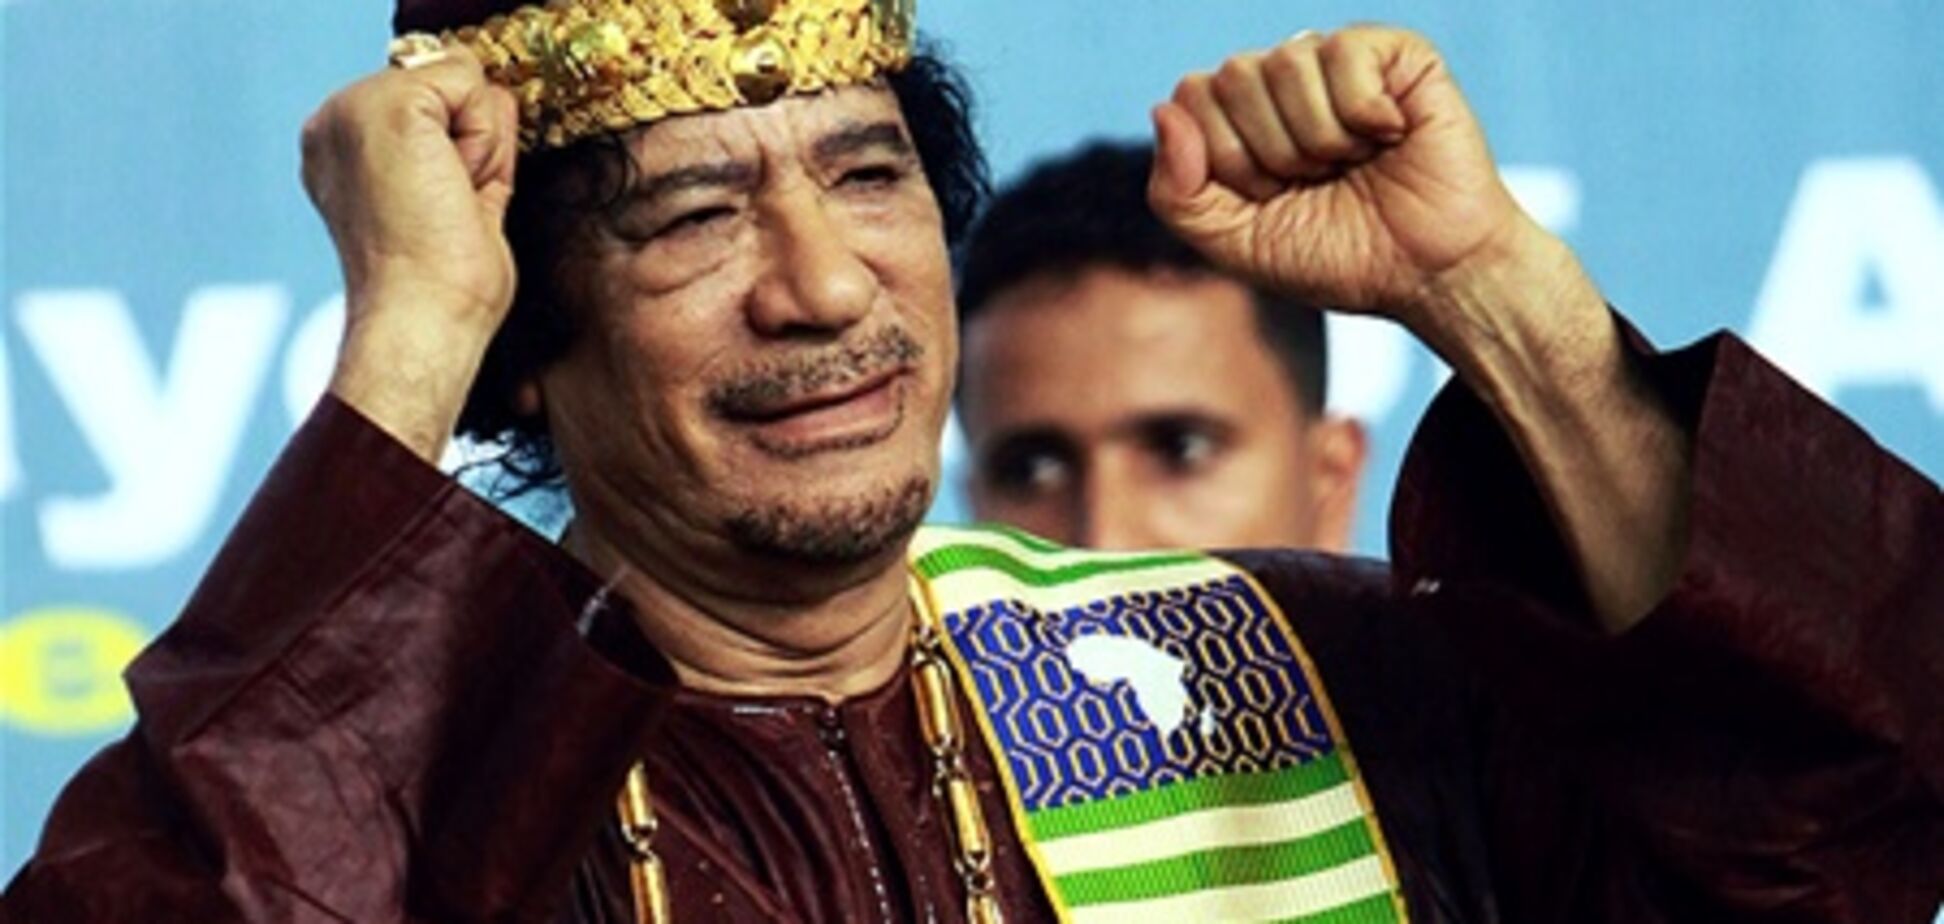 Каддафи обратился за помощью к западным пиарщикам